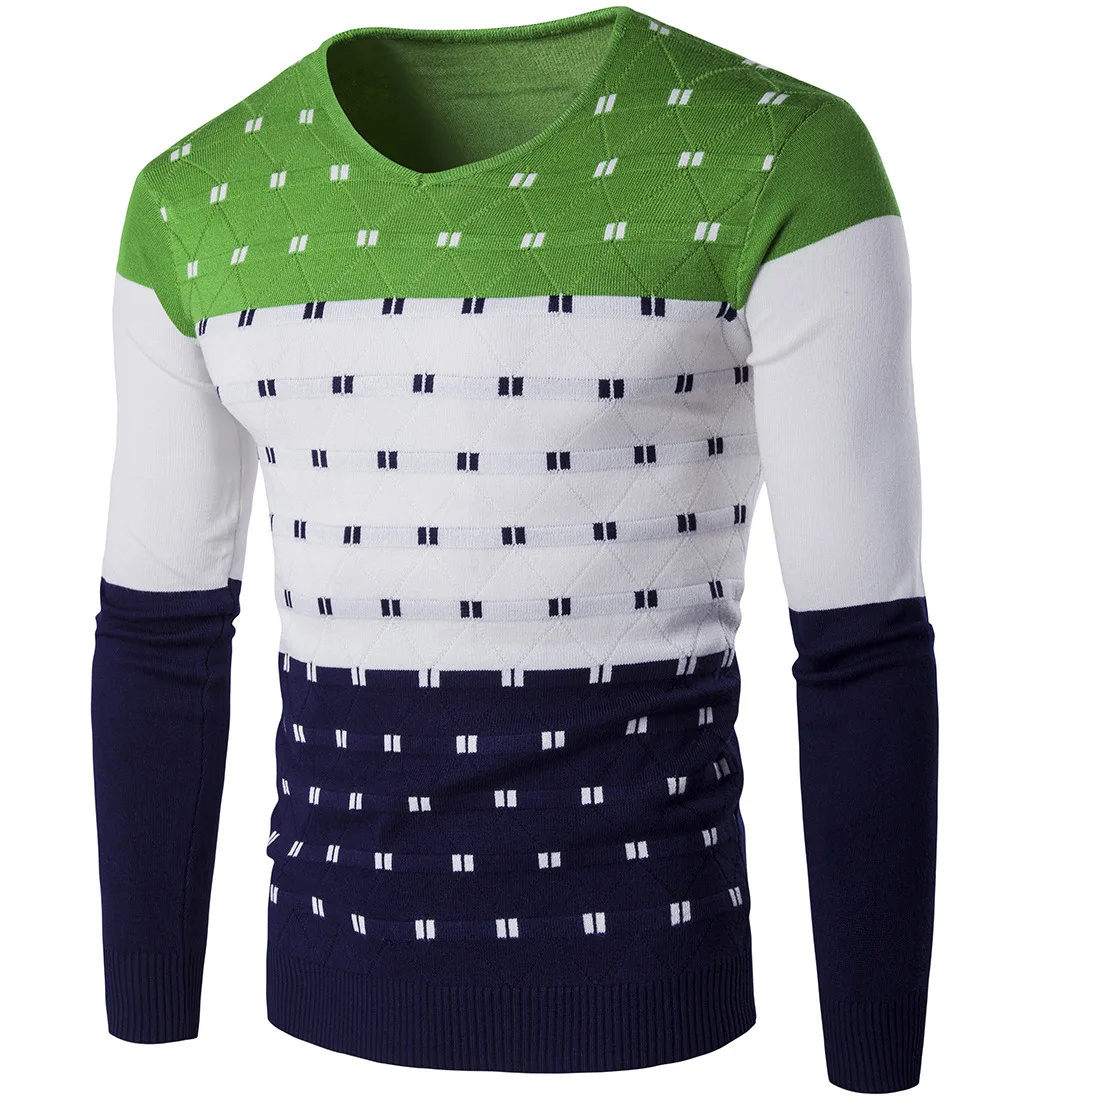 5 цветов полосатый свитер Для мужчин теплые с v-образным вырезом и длинным рукавом Зимняя Одежда для мужской моды Slim Fit печати пуловер свитер - Цвет: Зеленый